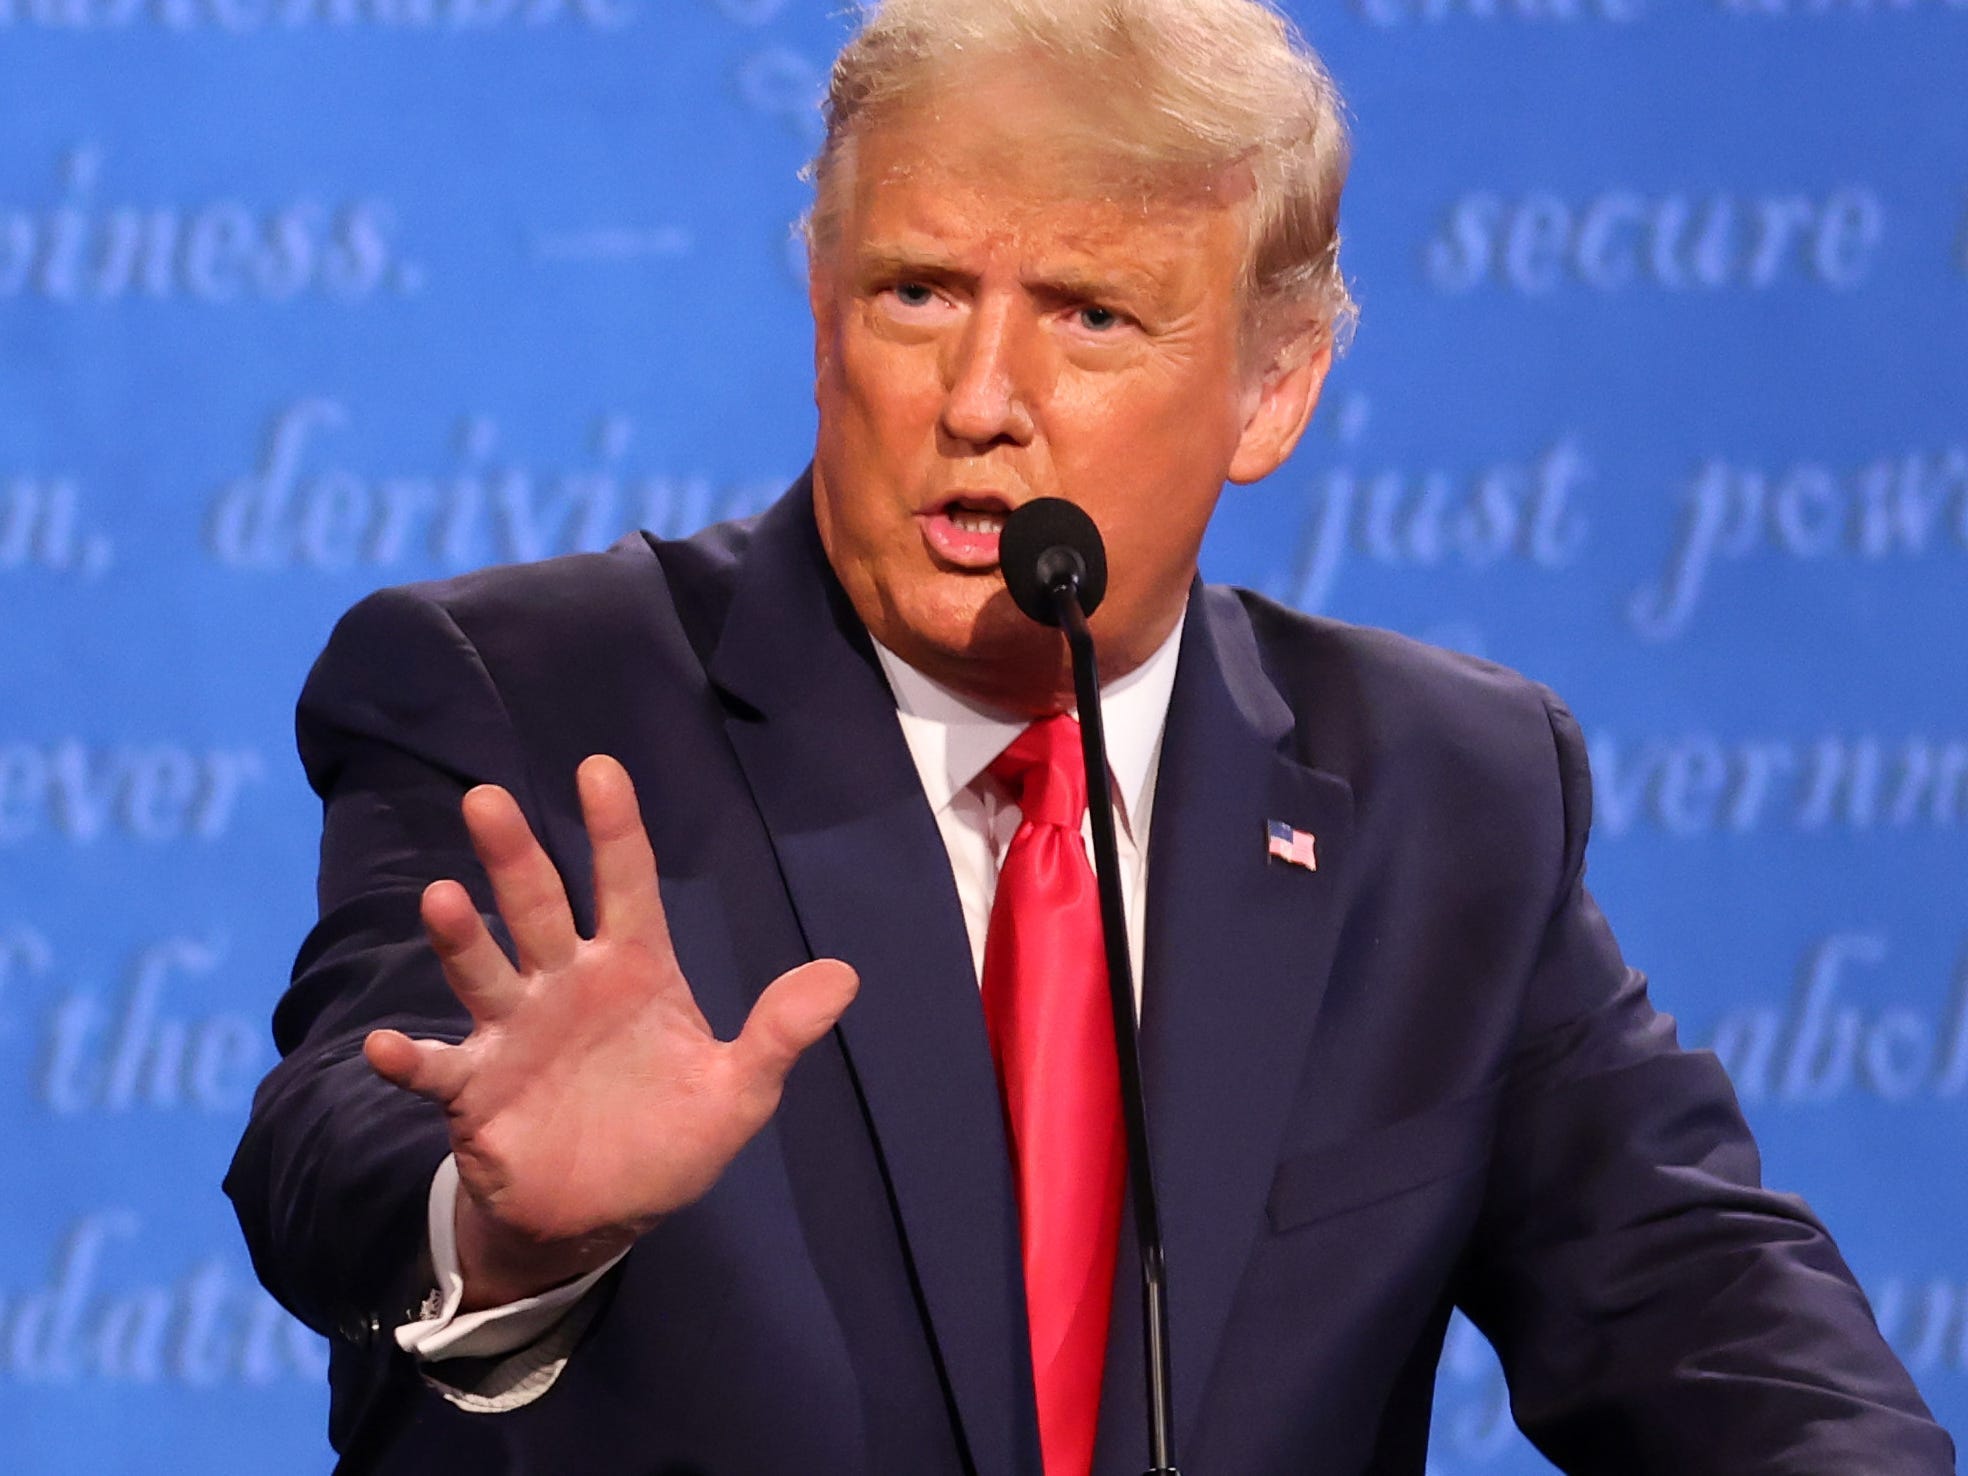 Donald Trump presidential debate